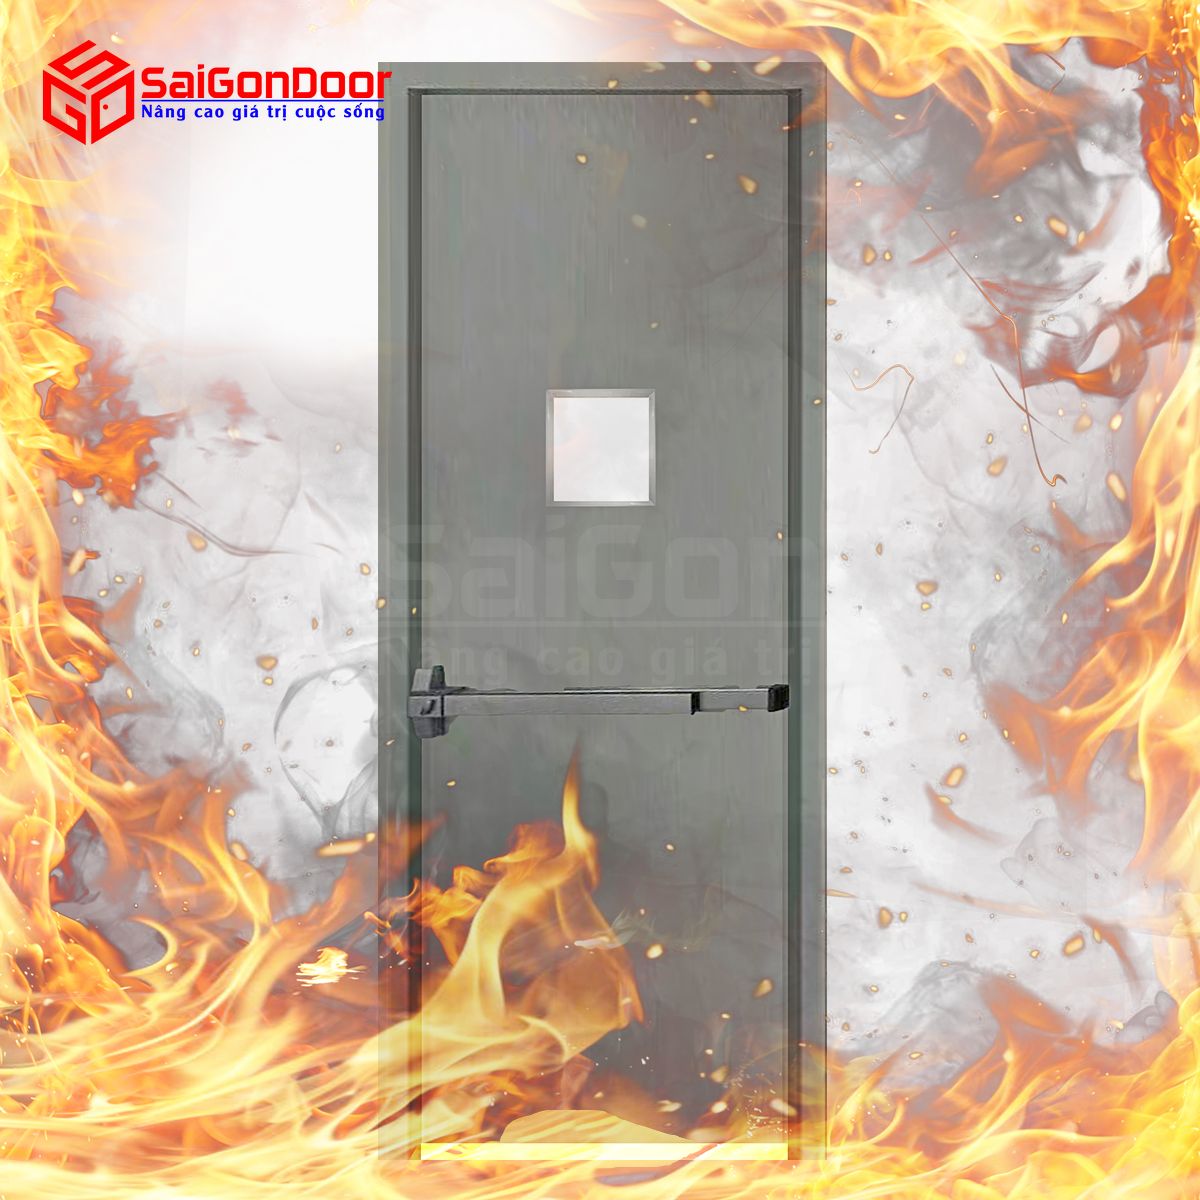 Trước khi được đưa vào sử dụng, cửa chống cháy cần kiểm định chất lượng và khả năng chống cháy